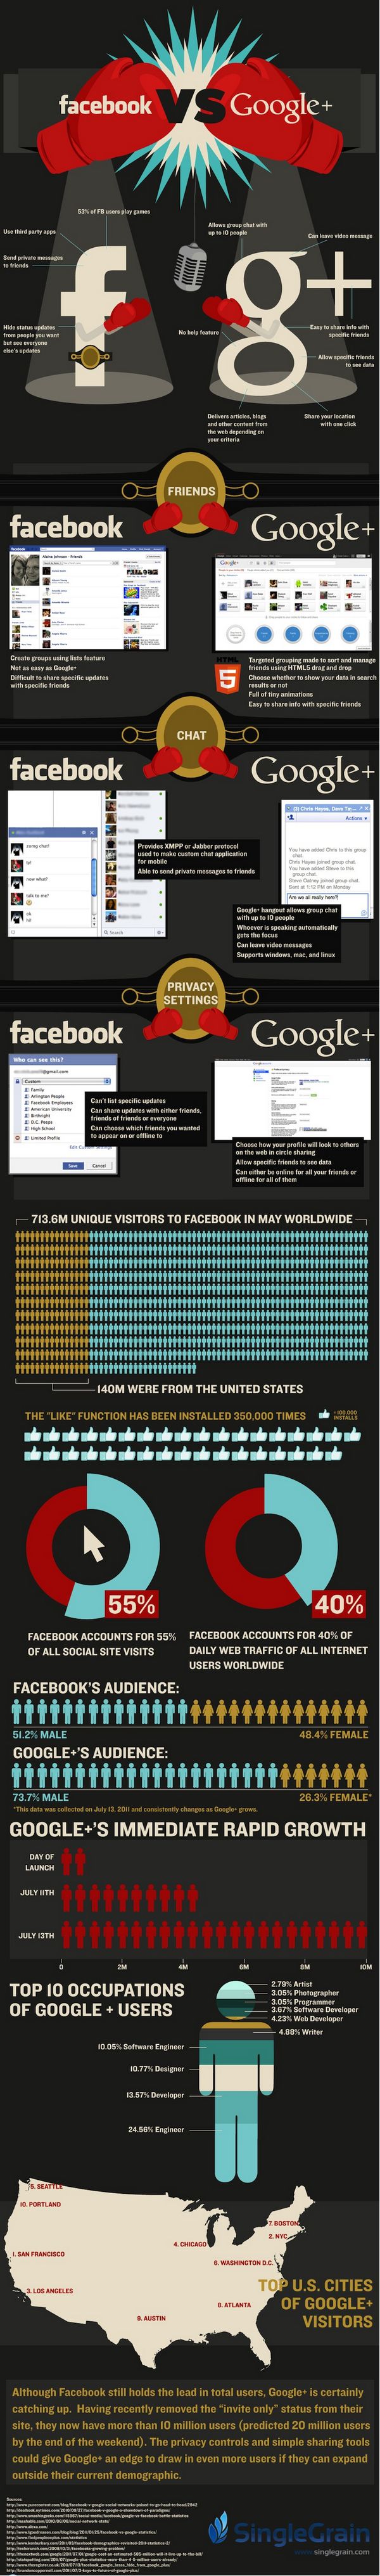 Lo último de la pelea entre Google+ y Facebook #Infografía 1